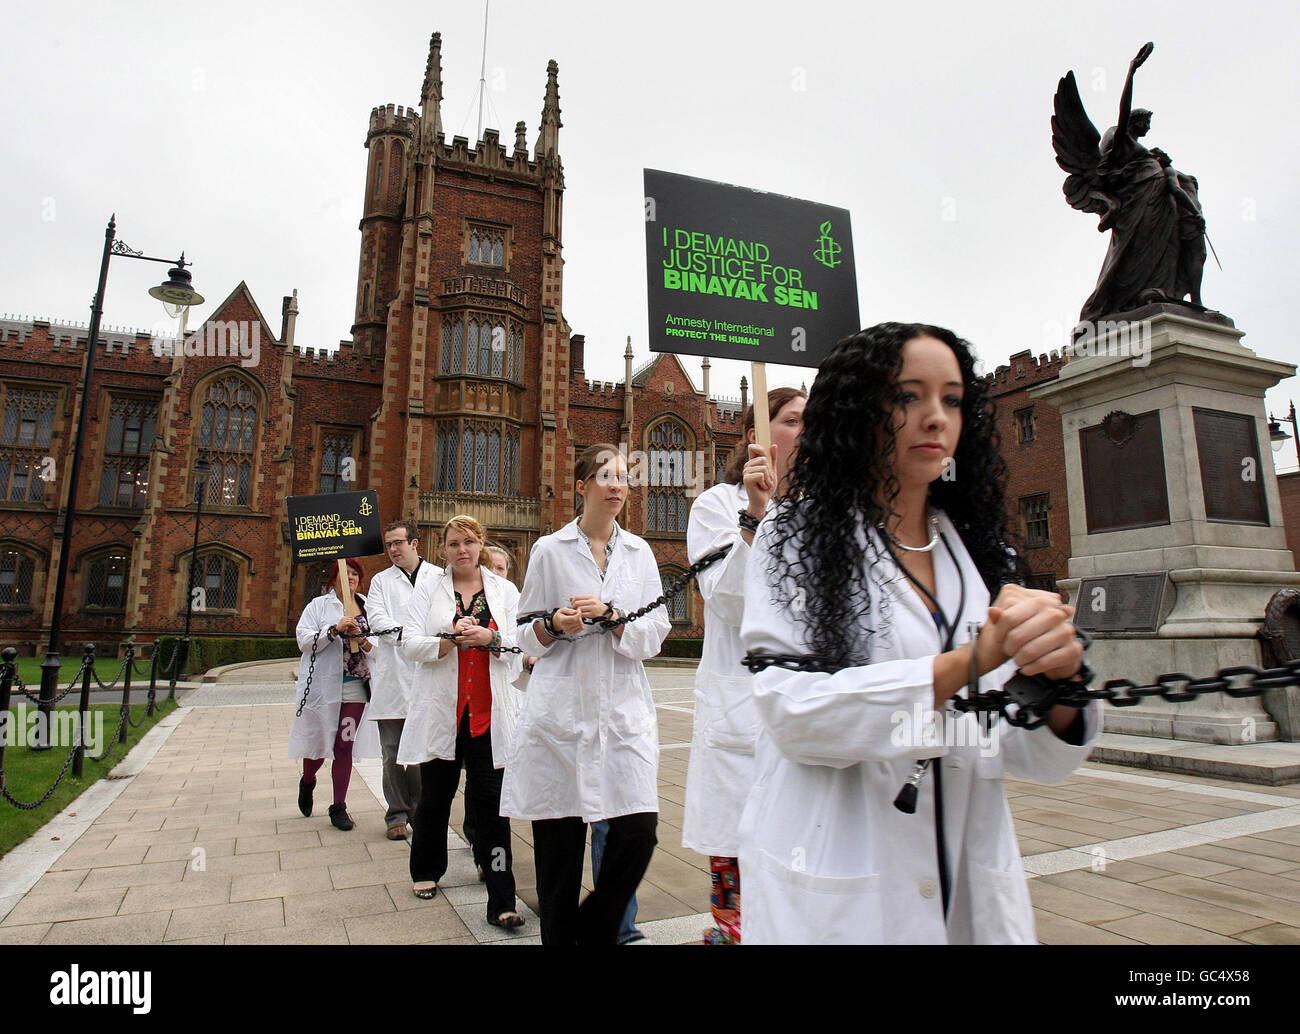 Individualmente esposado y encadenado 24 estudiantes de Belfast vestidos como médicos protestaron en la Universidad Queens de Belfast para destacar la difícil situación del Dr. Binayak Sen, un pediatra galardonado. Foto de stock